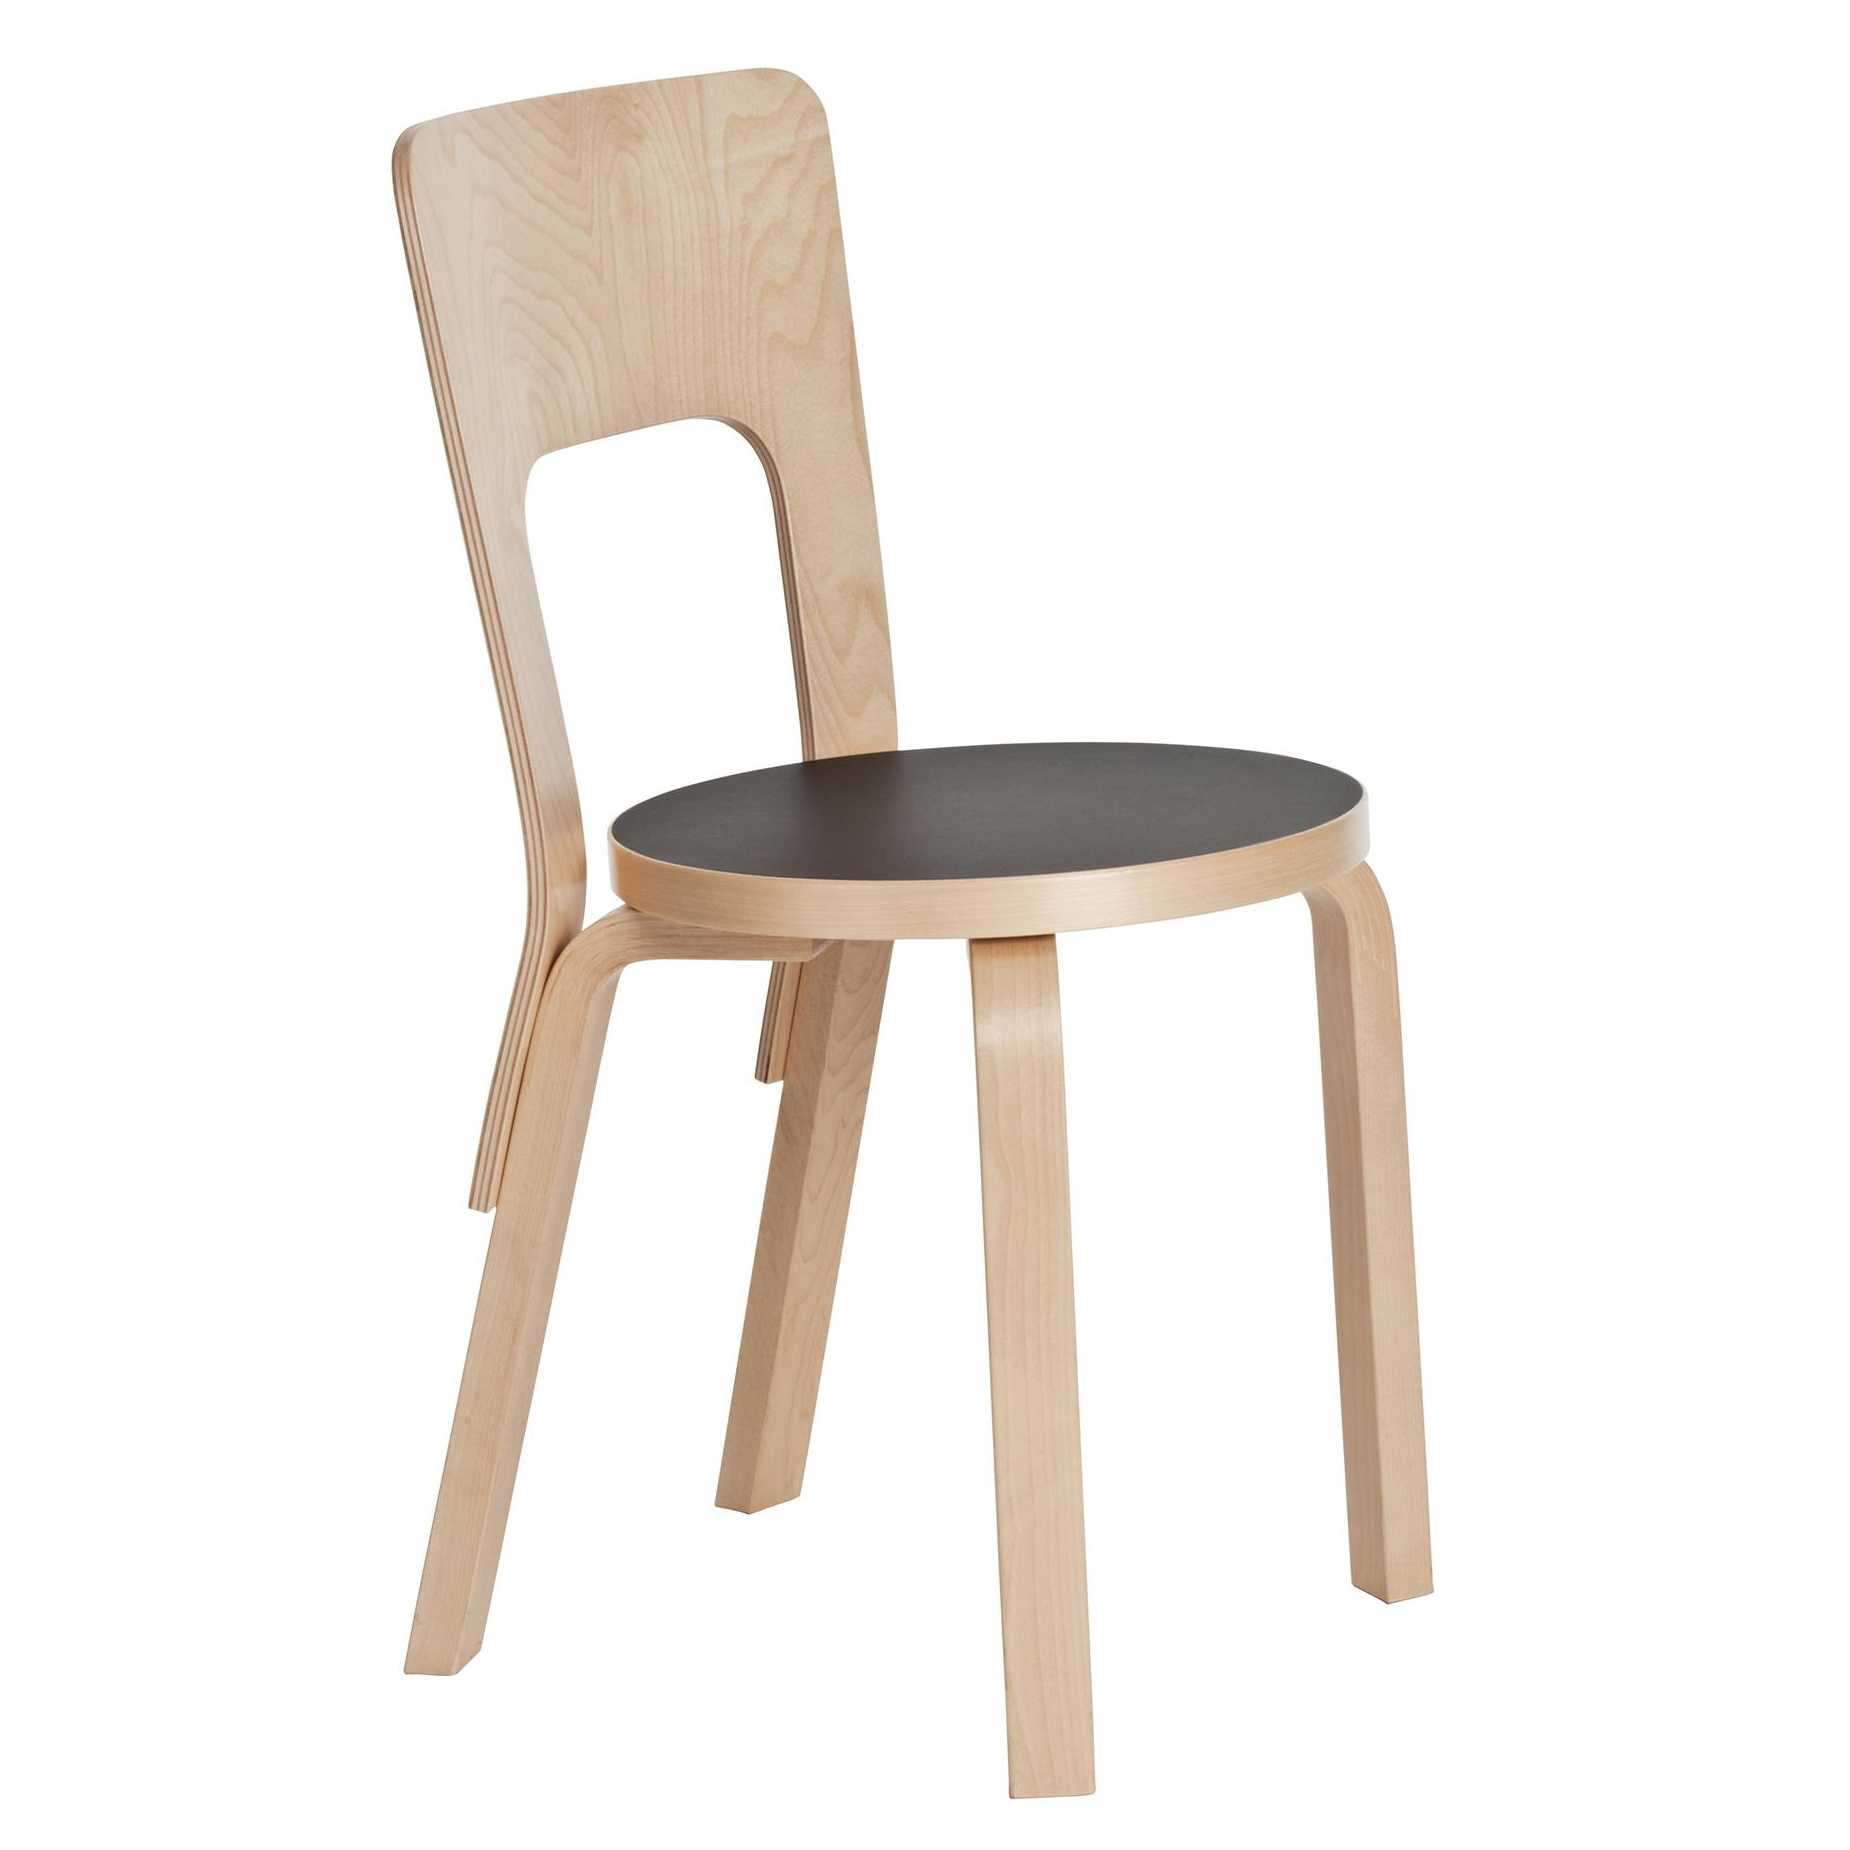 Artek - 66 Stuhl Gestell klar lackiert - schwarz, natur/Sitzfläche Linoleum/Gestell Birke massiv klar lackiert/BxHxT 39x80x42cm von Artek